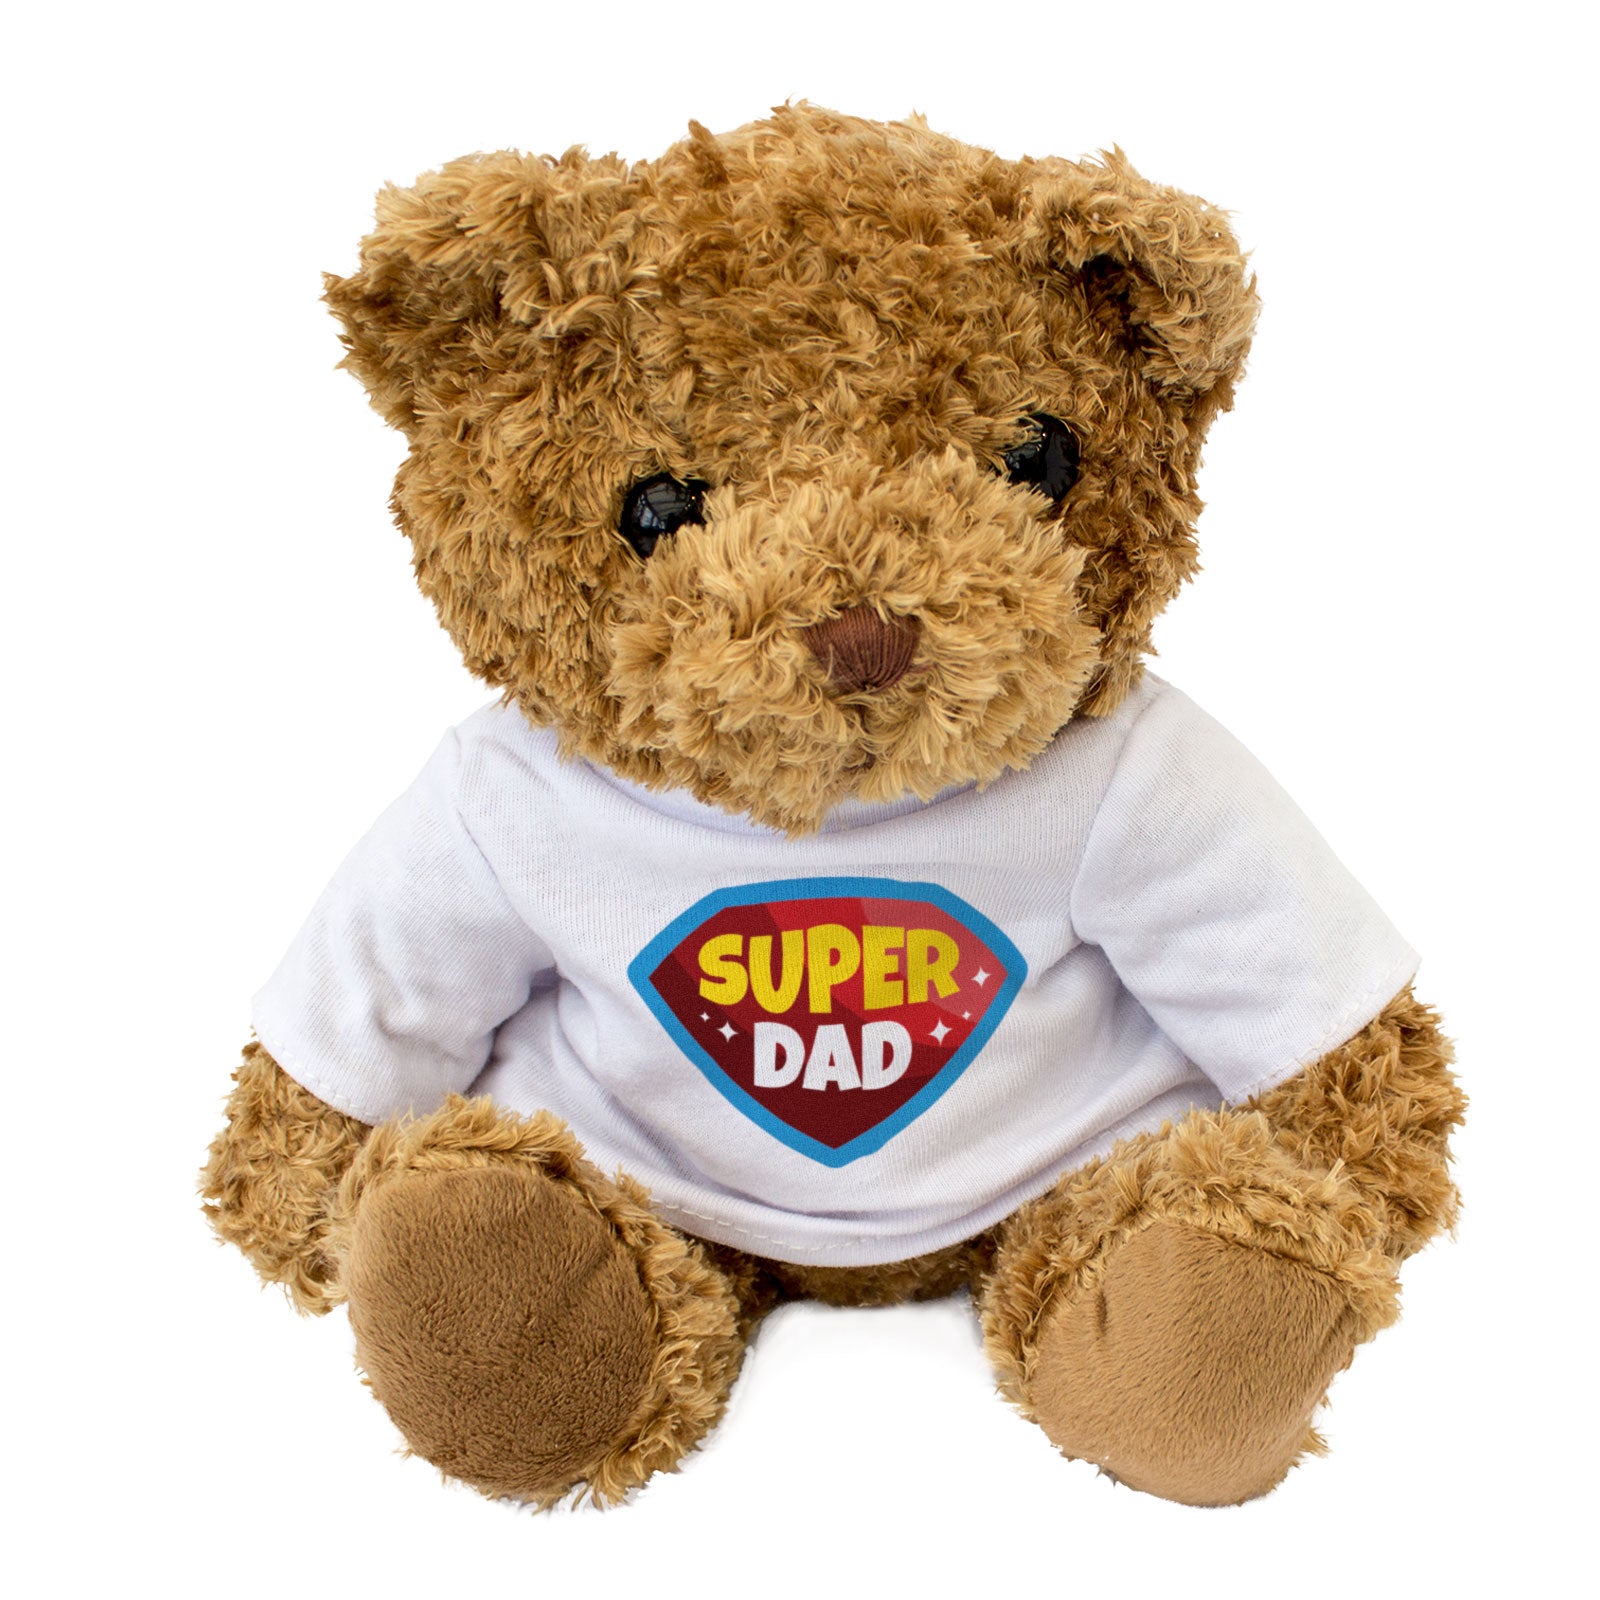 Super Dad - Teddy Bear - Gift Present